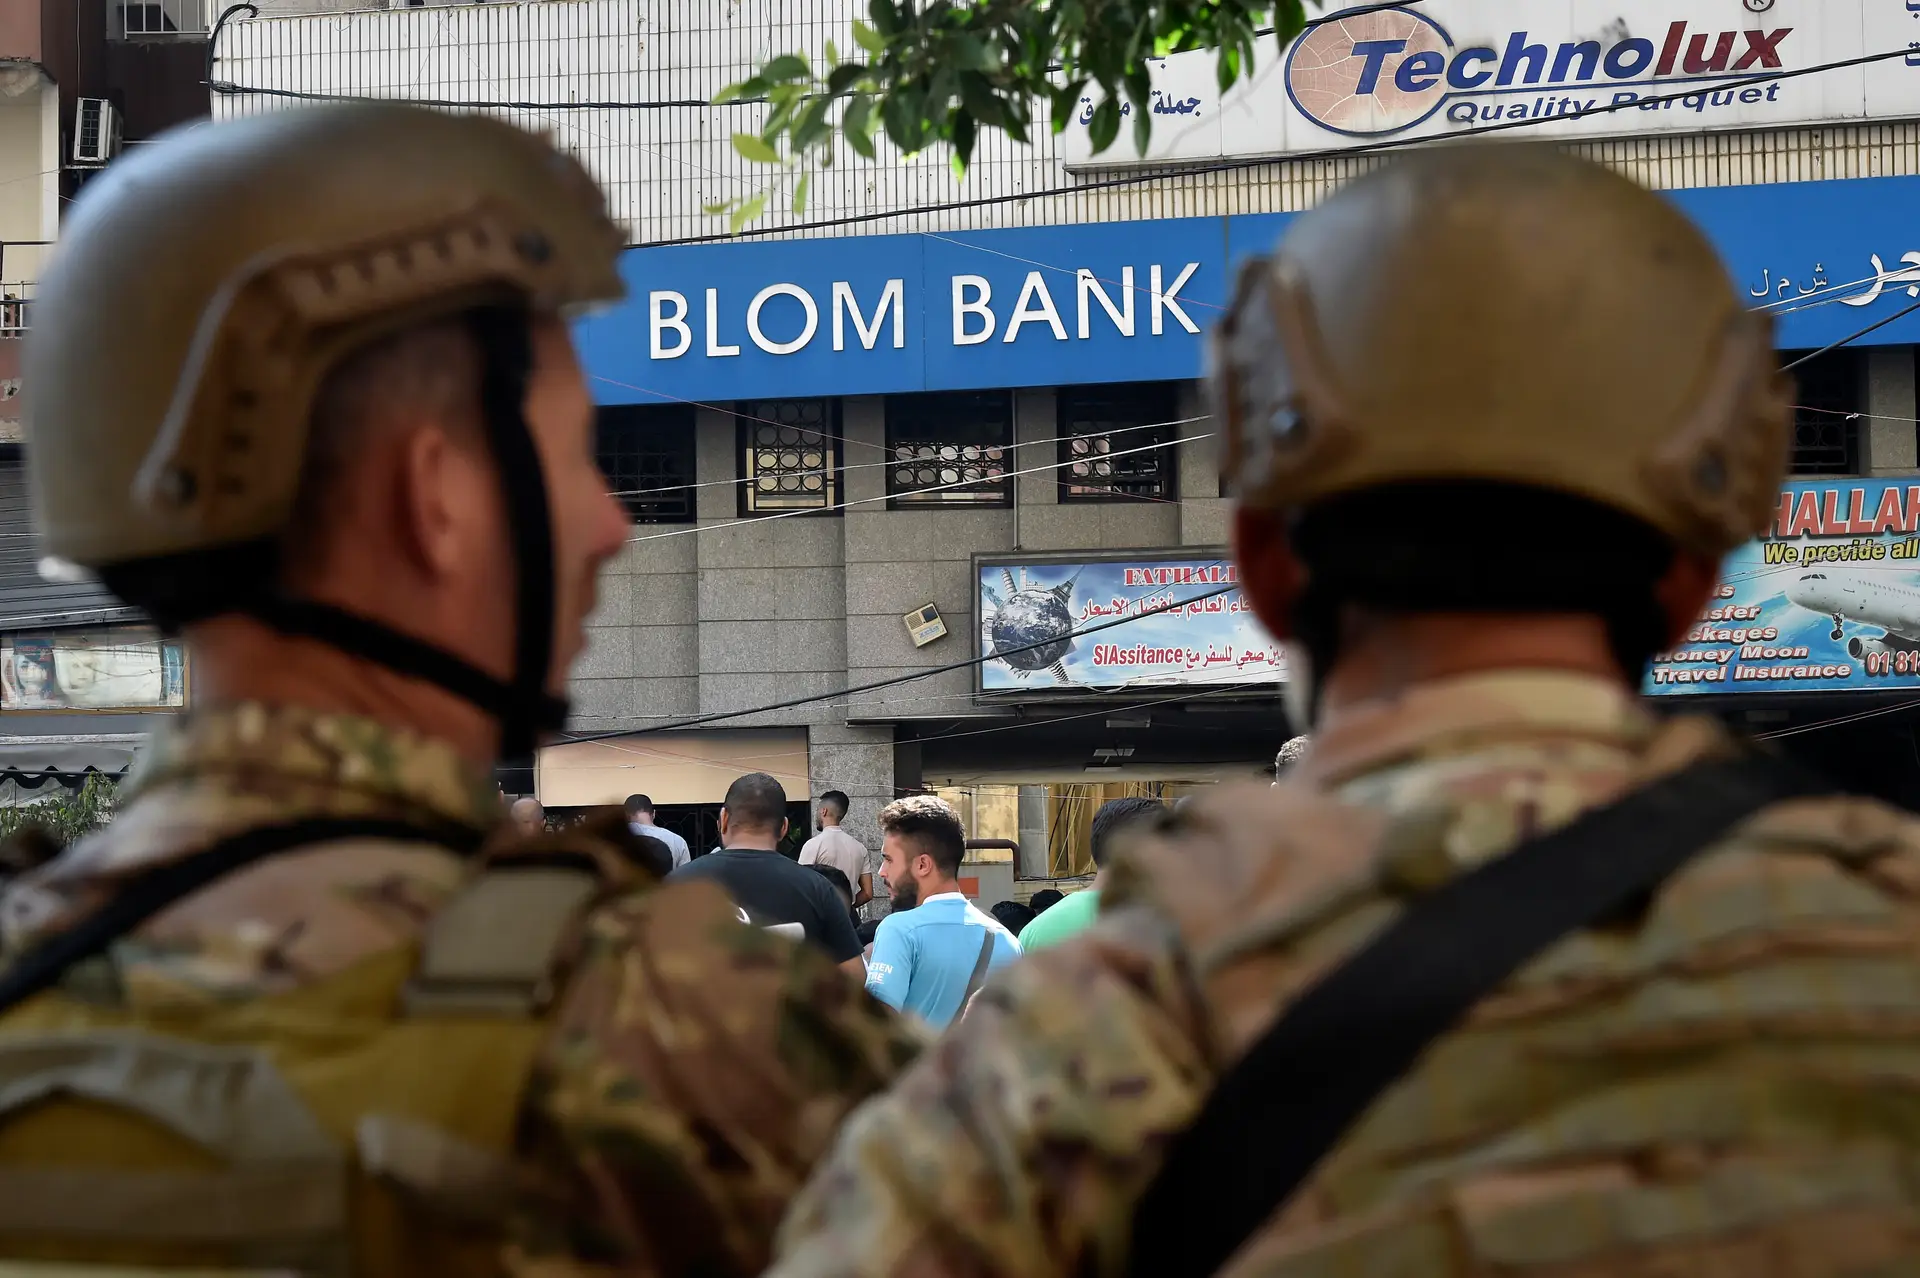 Líbano: crise económica leva depositantes a assaltarem bancos para levantar dinheiro das próprias contas